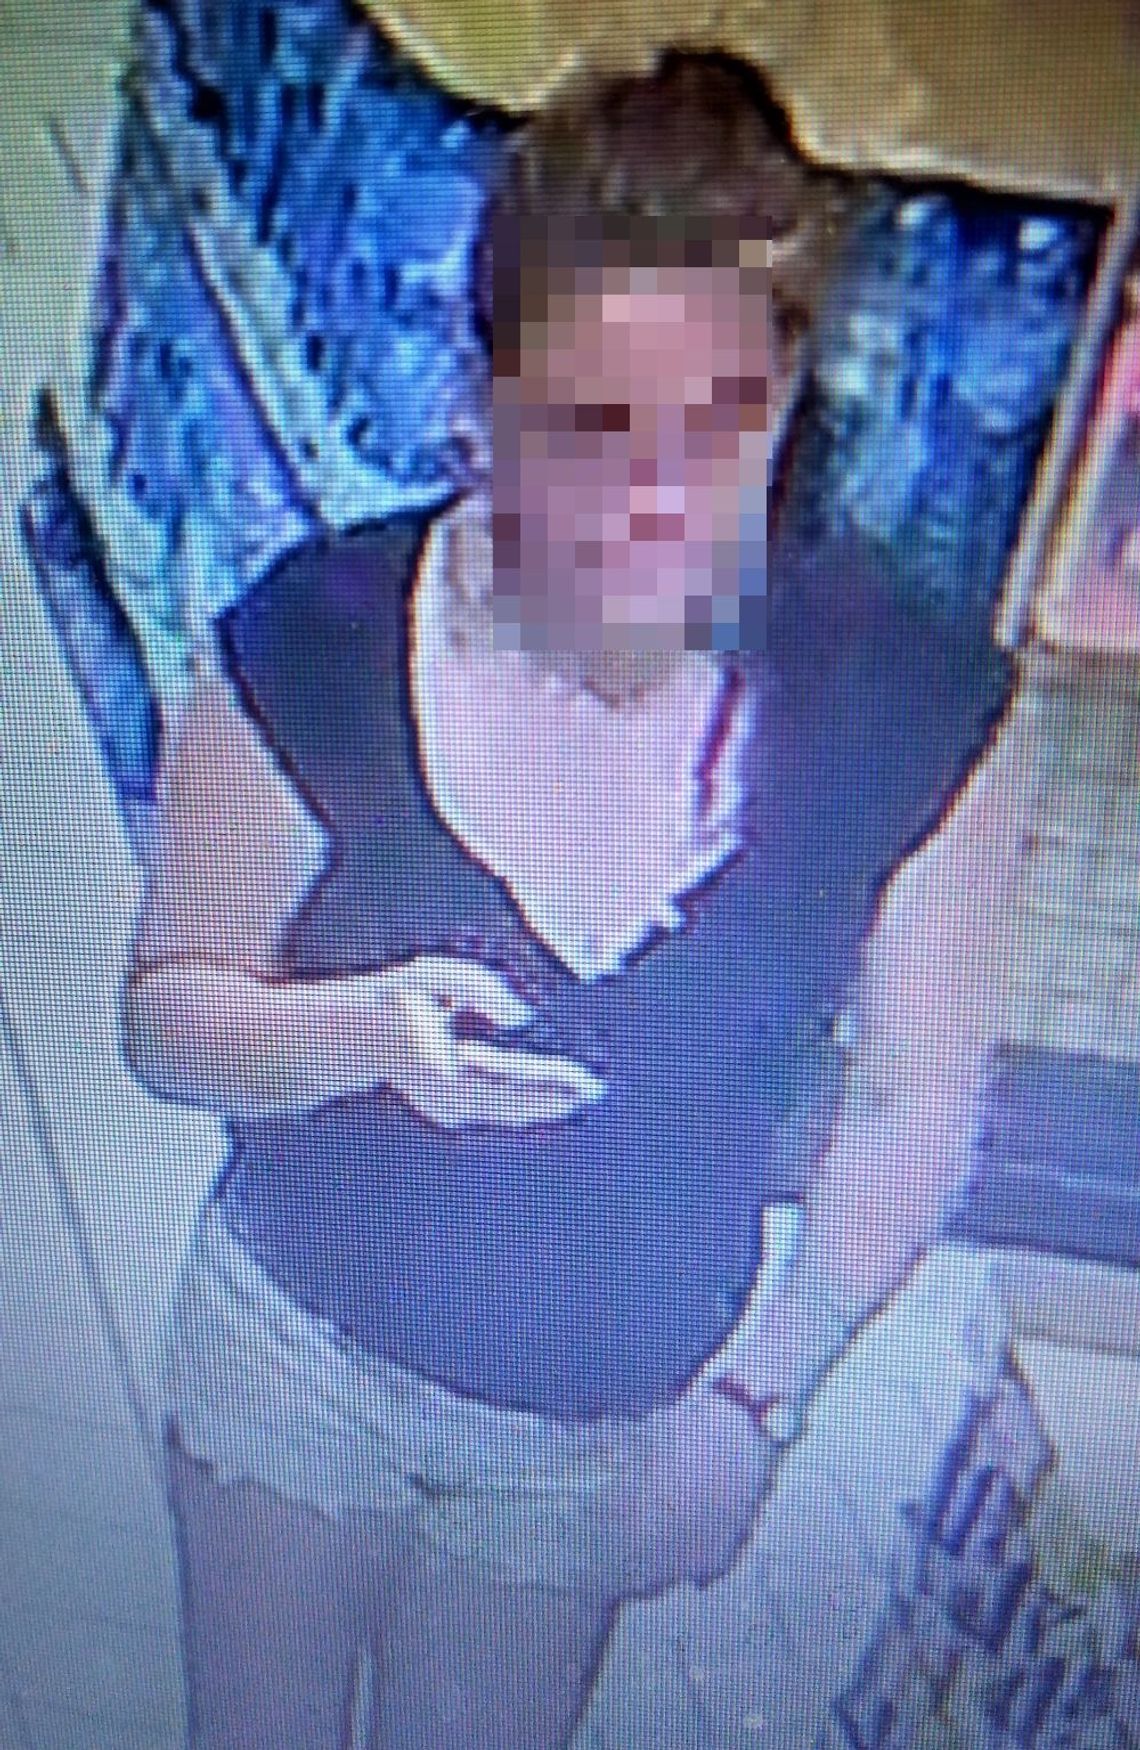 PILNE. Policja zatrzymała poszukiwaną kobietę podejrzewaną o kradzież torebki ze sklepu 